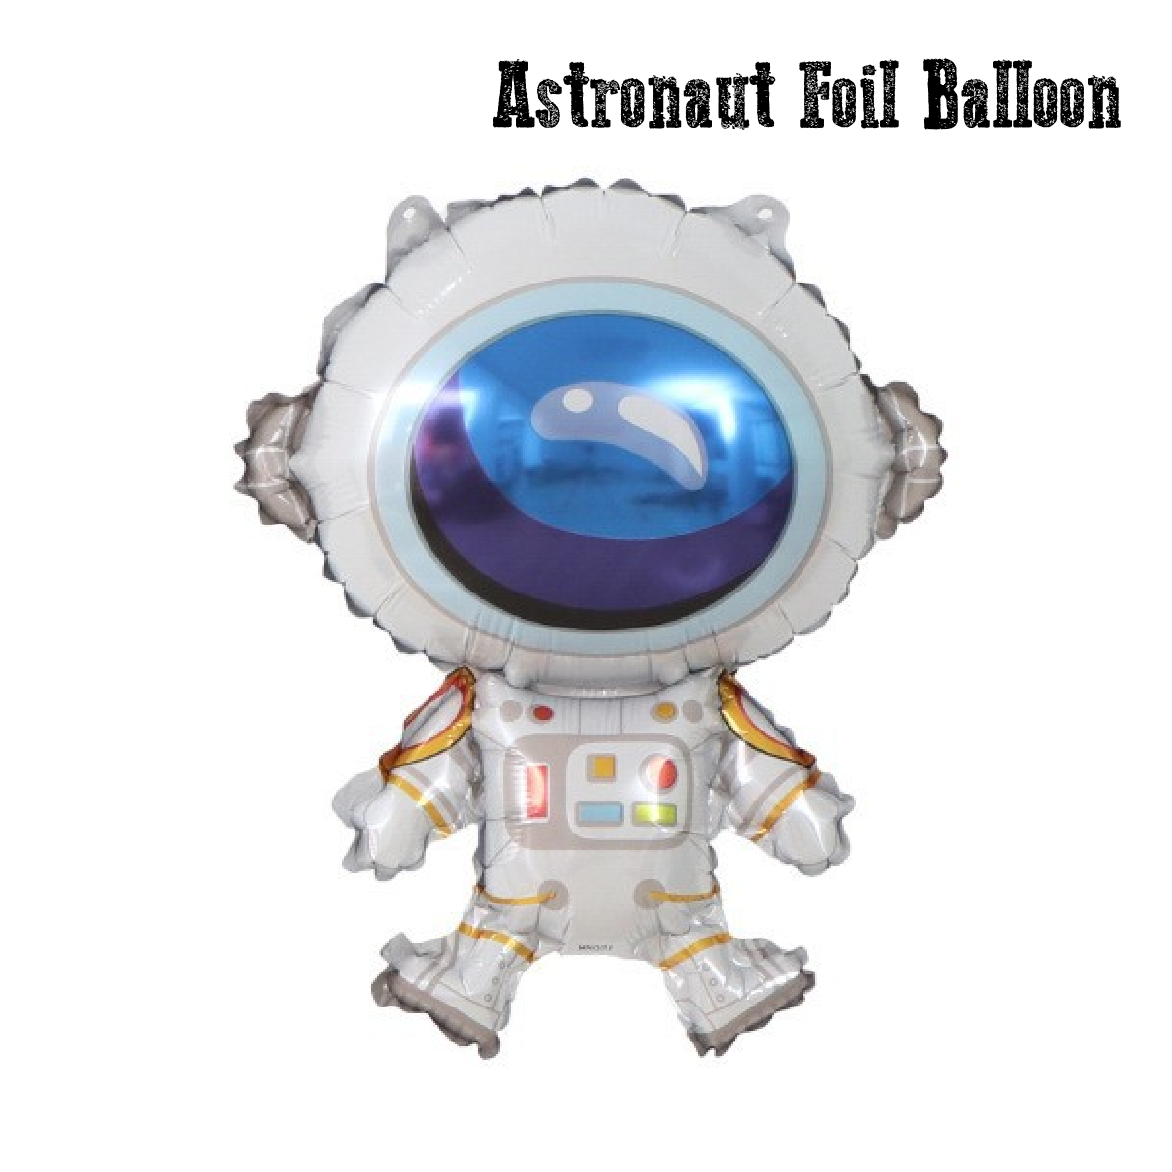 Party Decoration Balloon - Astronaut Foil Balloon - Medium